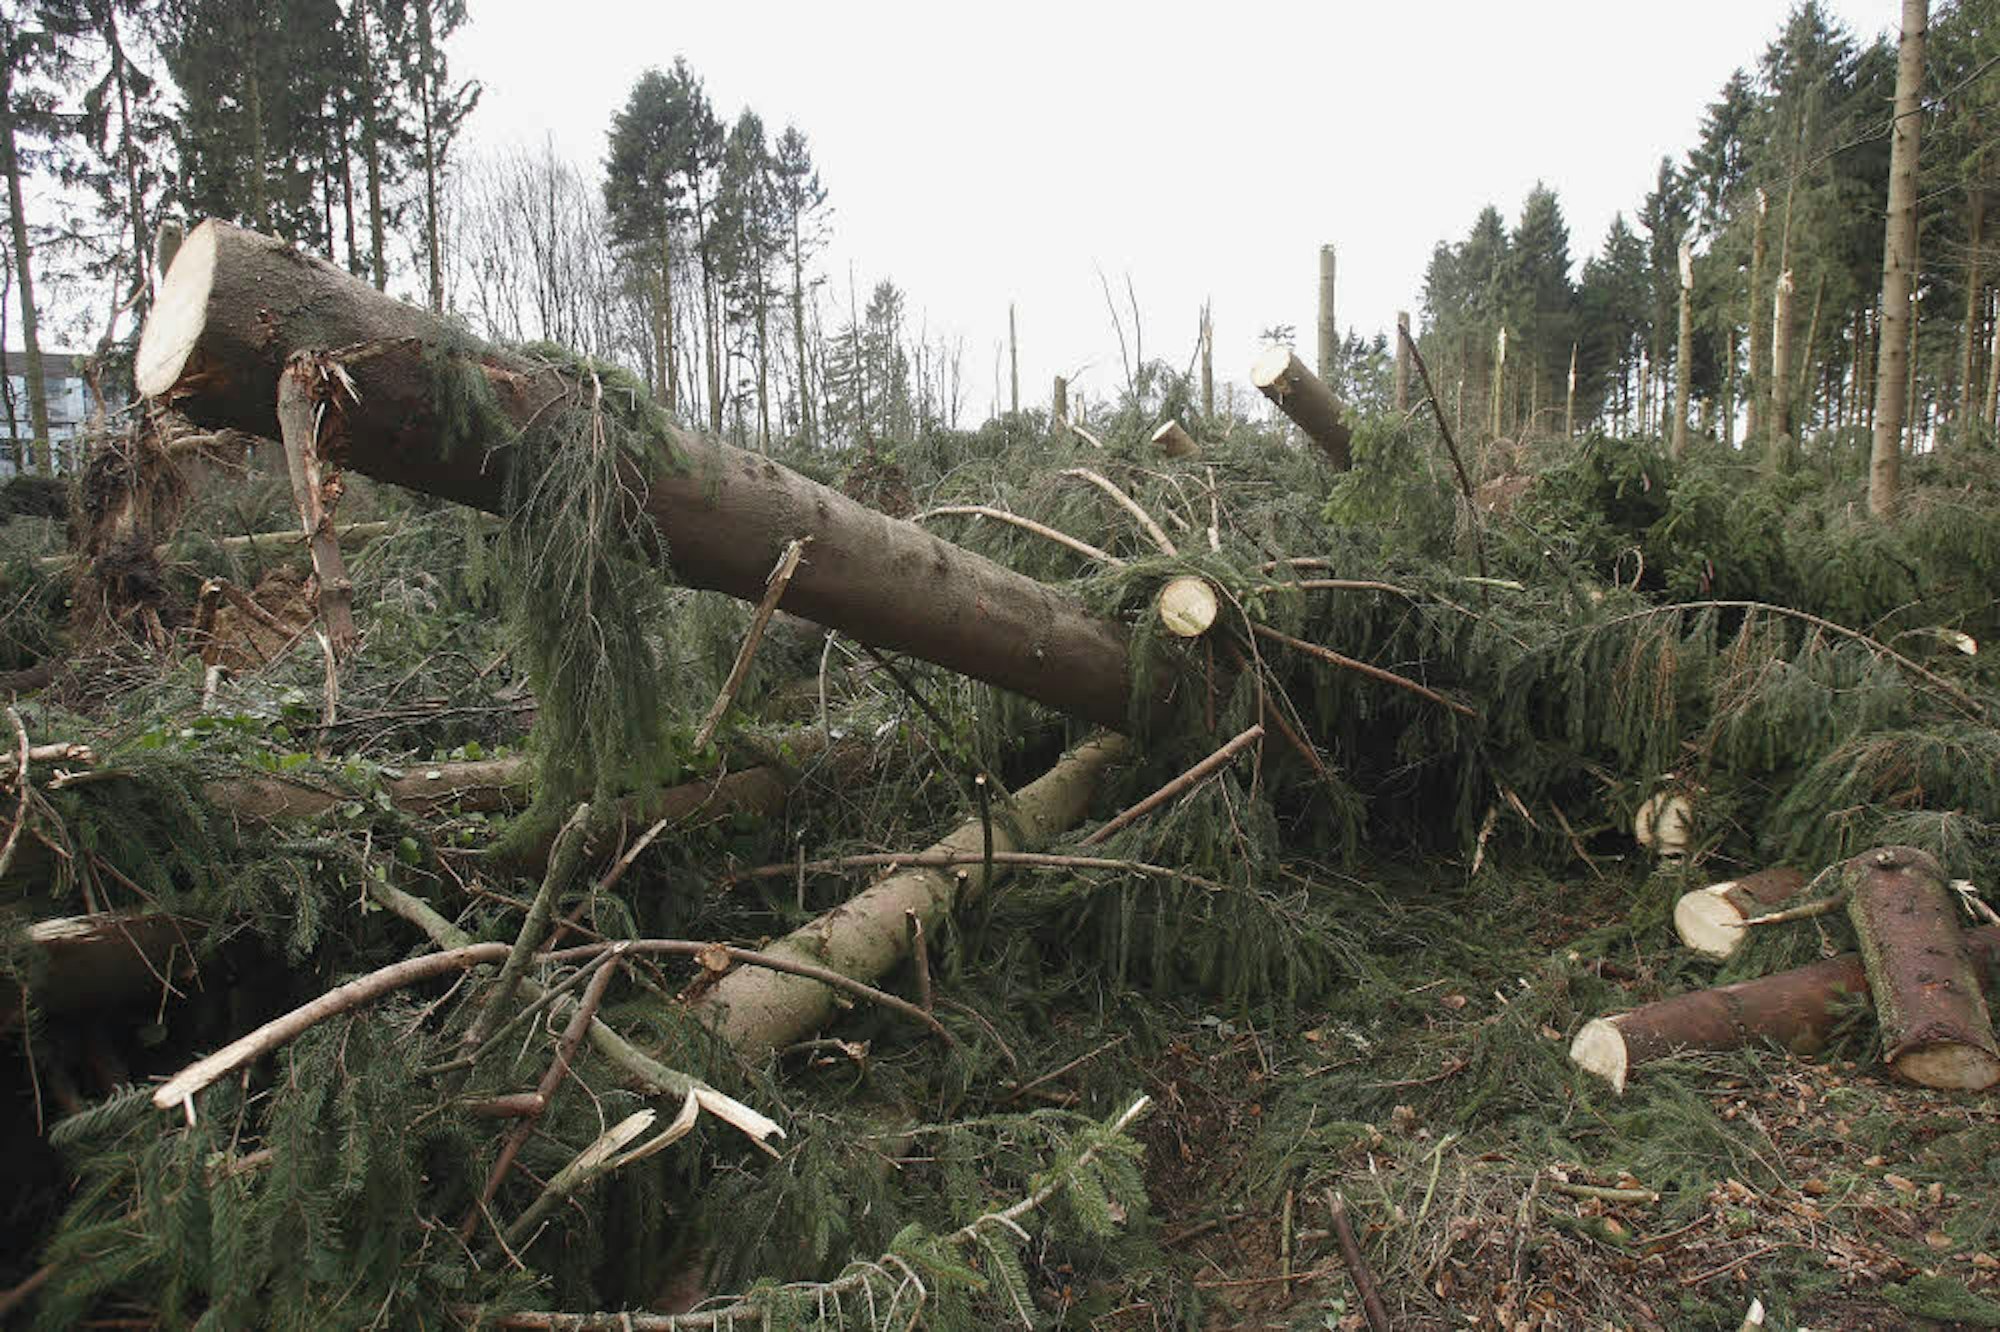 2007 ließ der Sturm Kyrill vorwiegend Nadelbäume, insbesondere Fichten, auf großen Flächen umstürzen. Die Baumstämme lagen kreuz und quer übereinander.